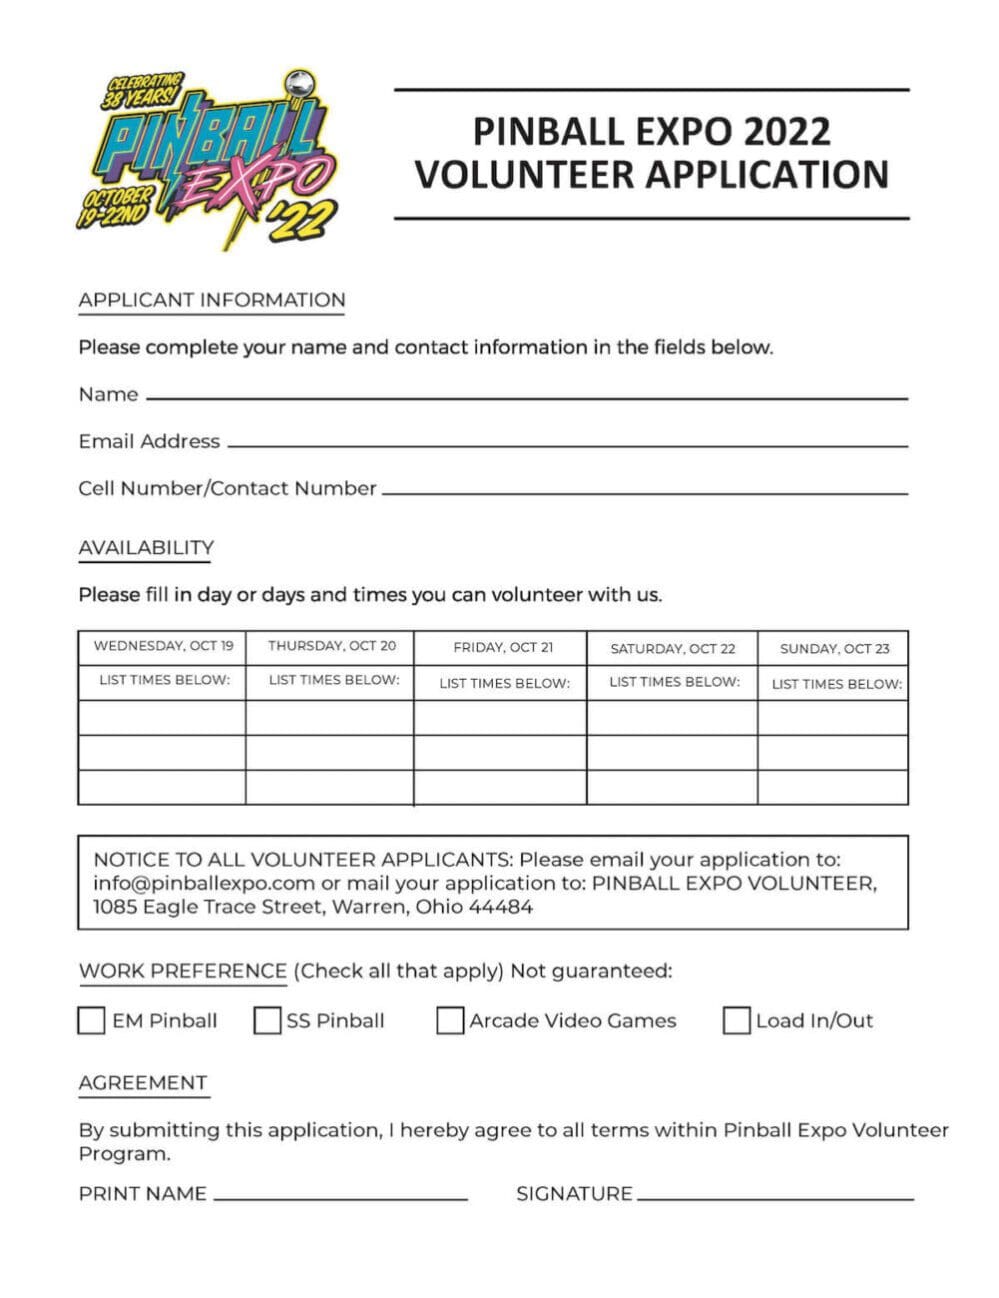 PinballExpo-2022-Volunteer-Form